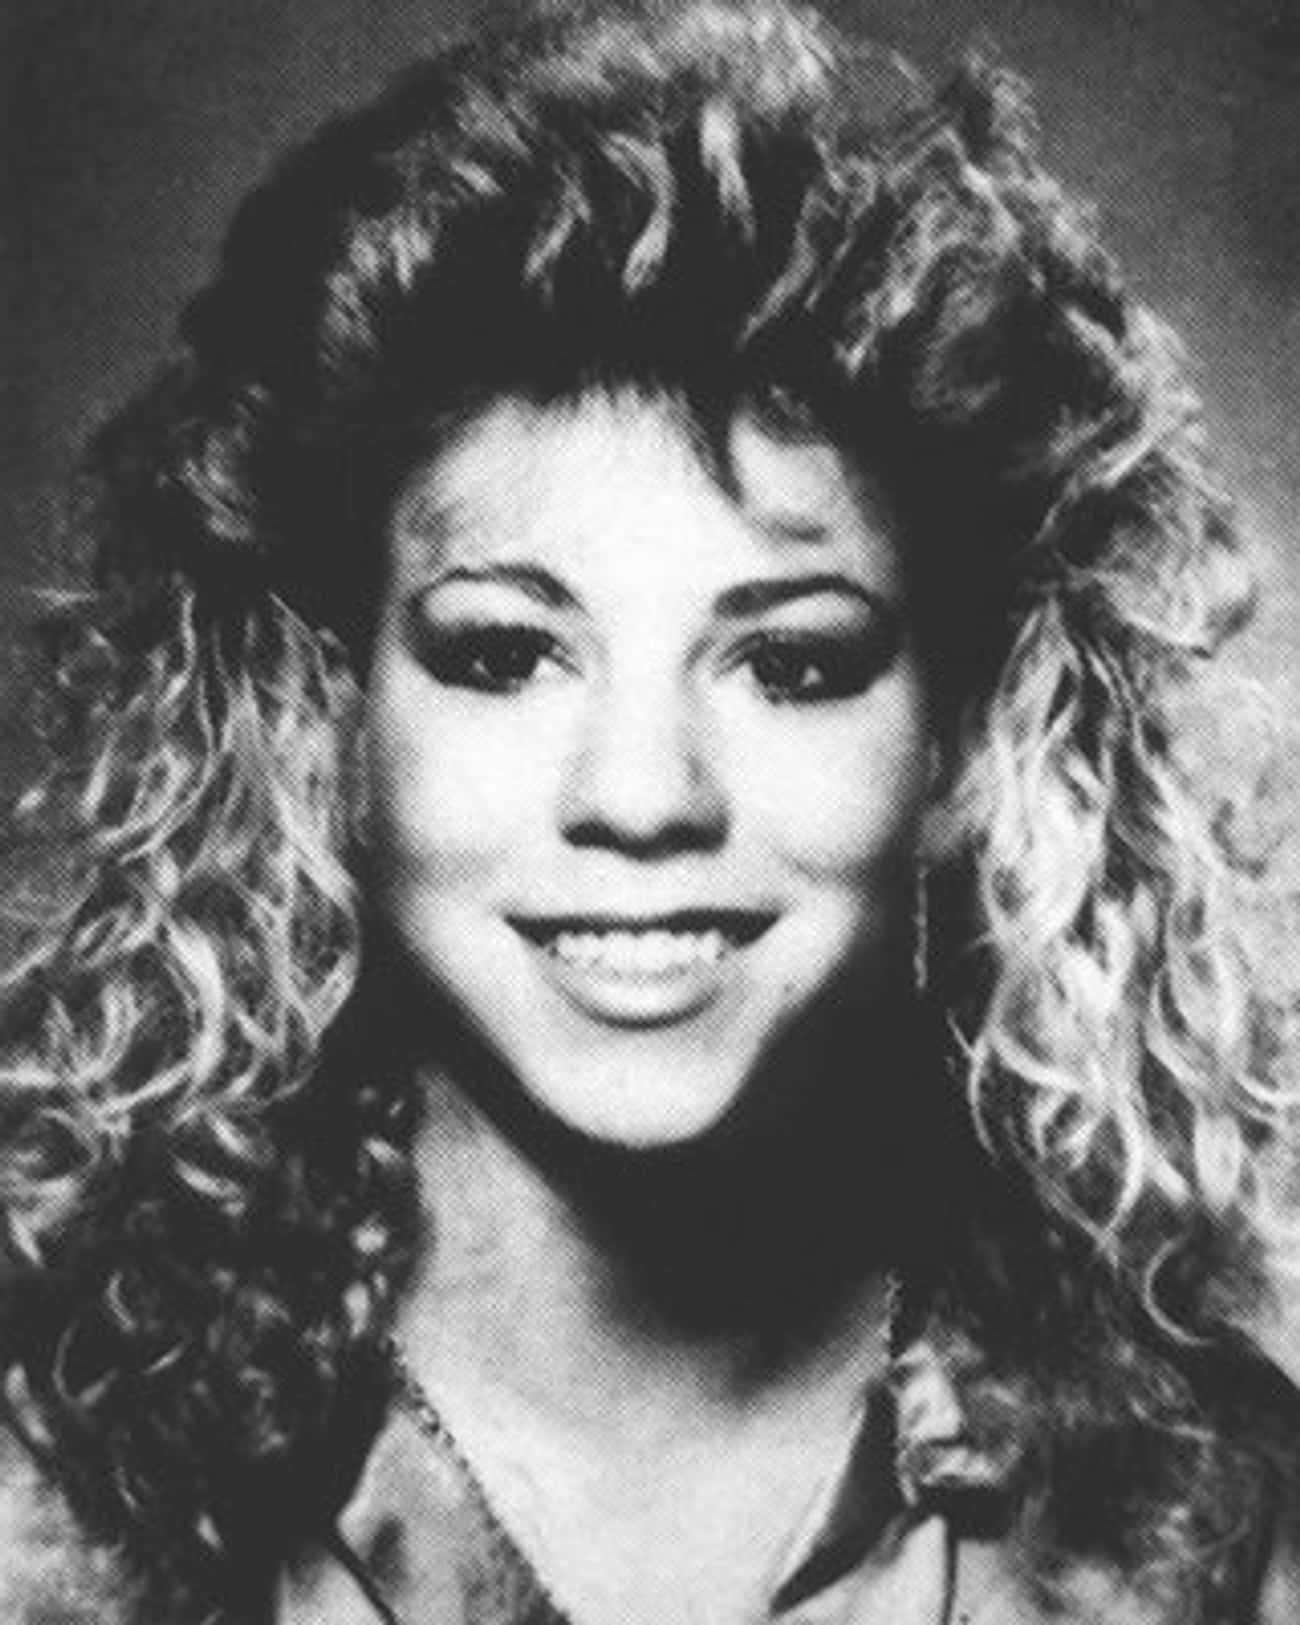 Young Mariah Carey Closeup Headshot